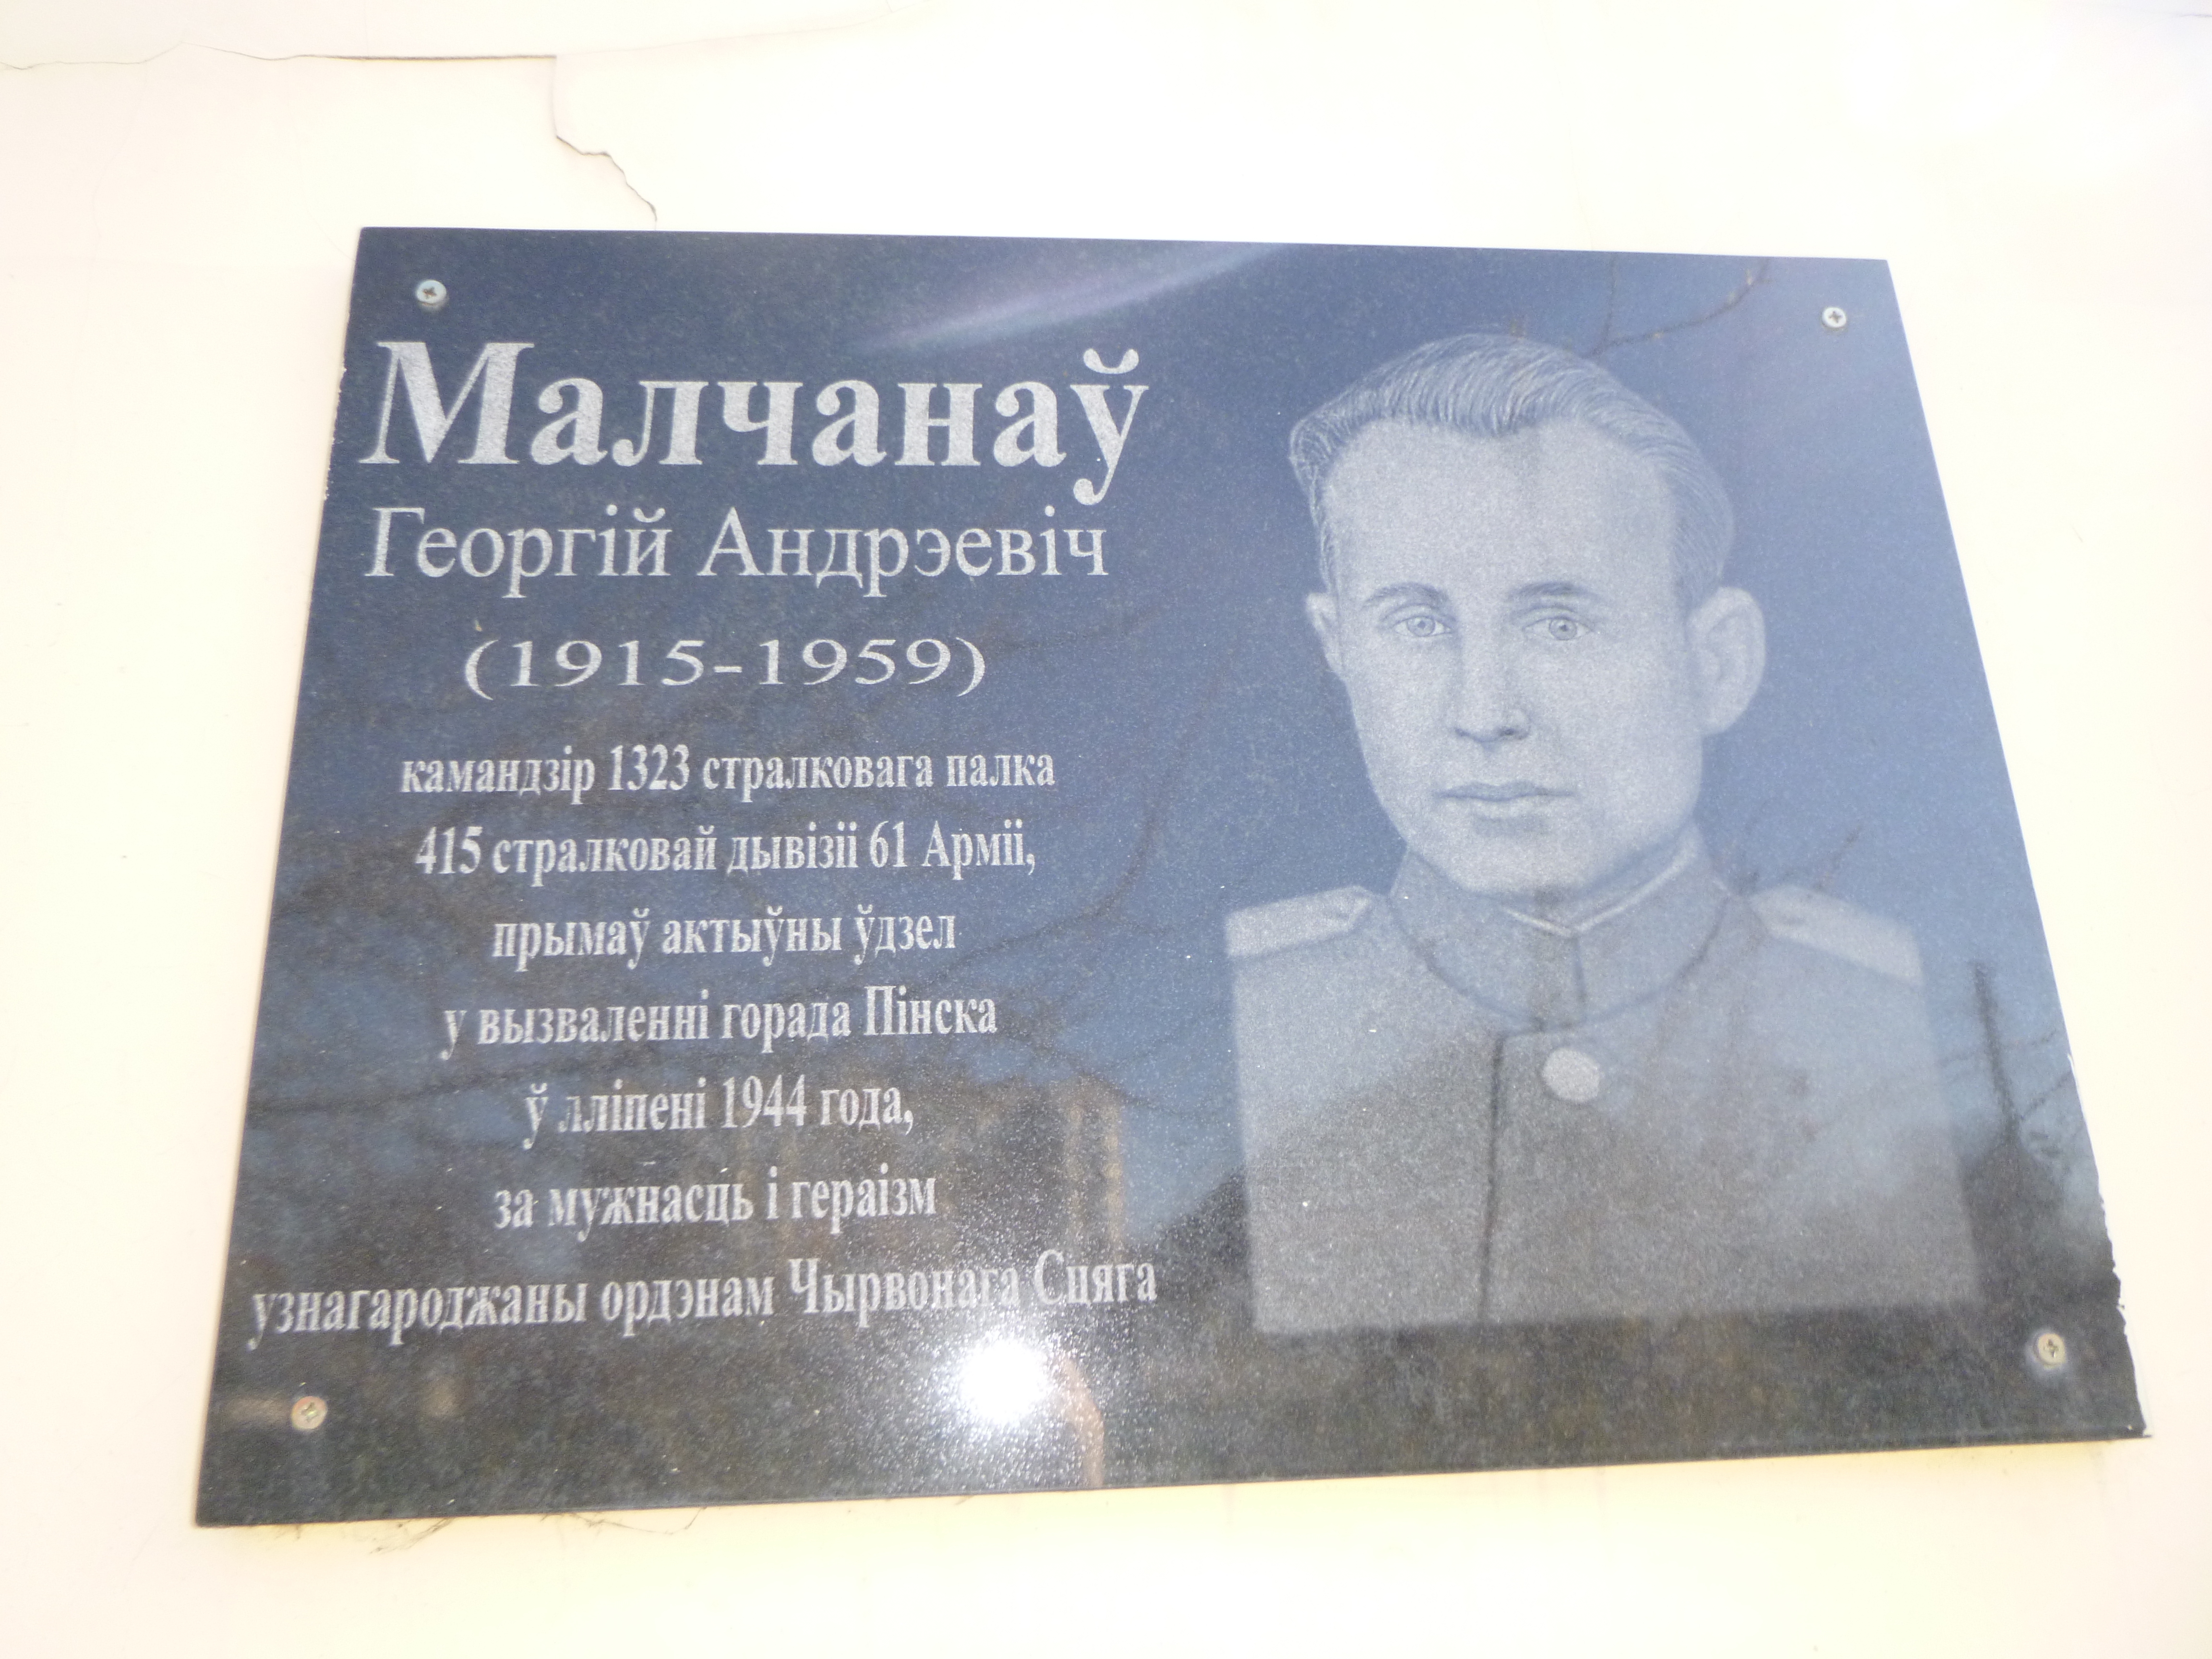 Мемориальный знак В честь Г.А. Молчанова, расположенная в г. Пинск,  район, Брестская область